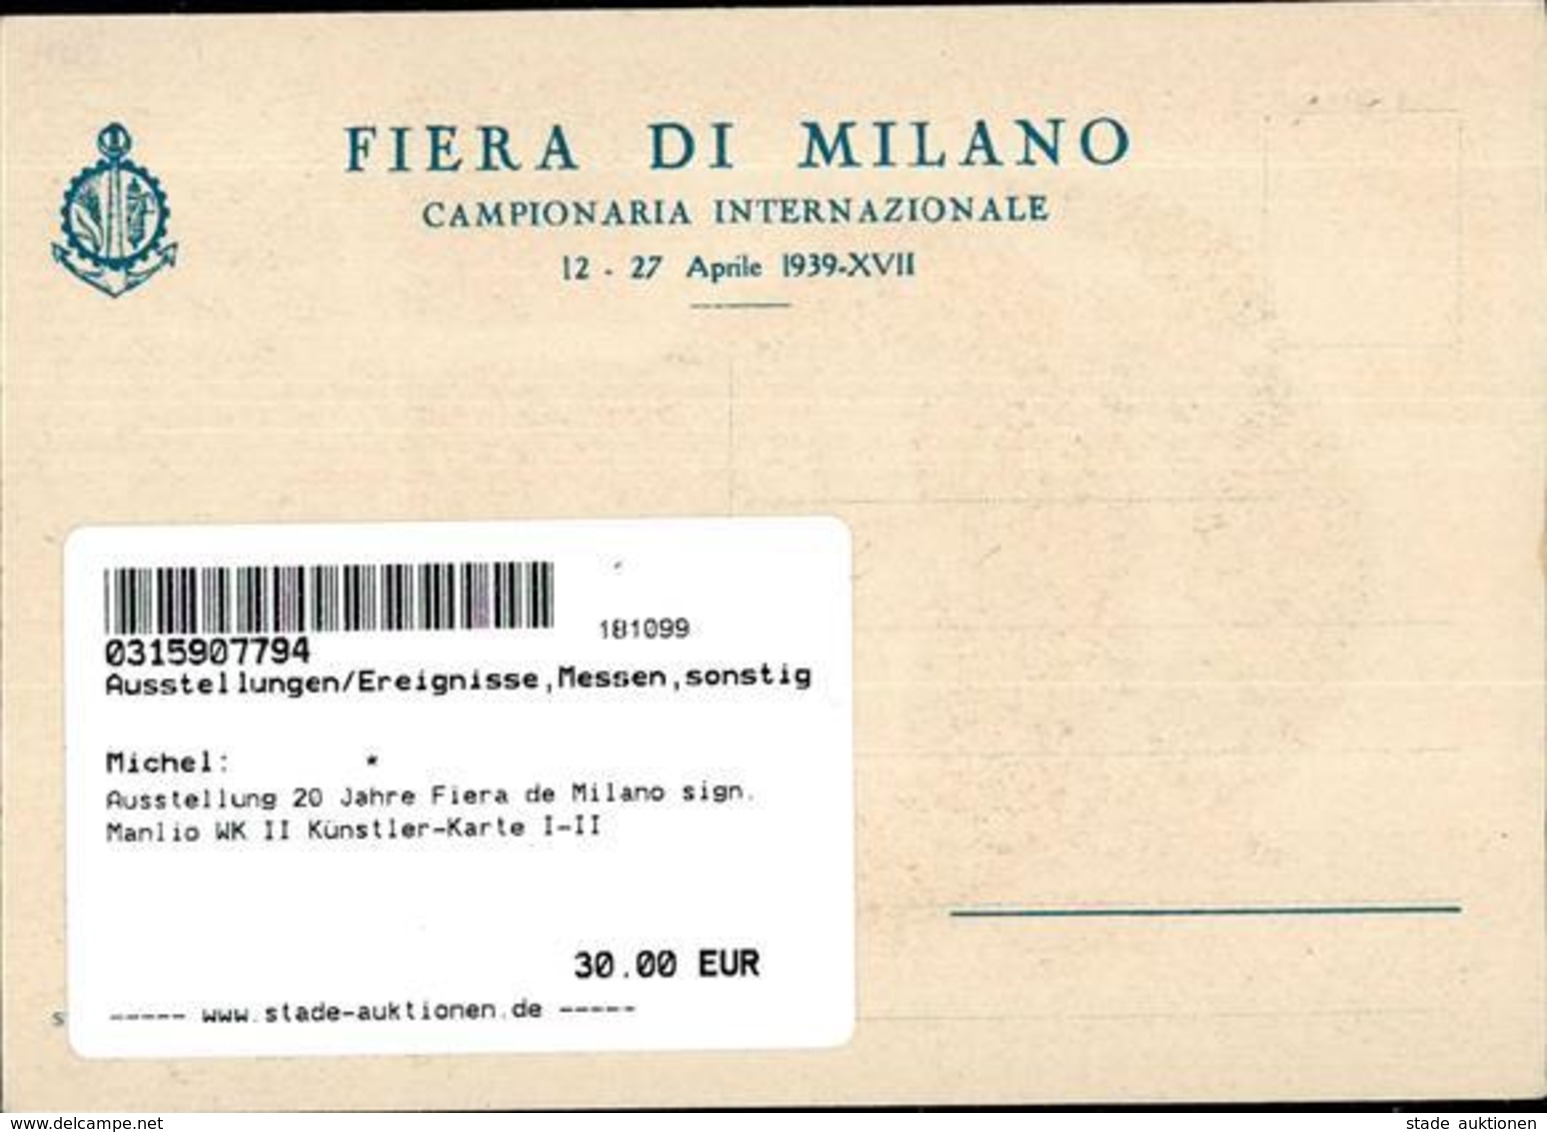 Ausstellung 20 Jahre Fiera De Milano Sign. Manlio WK II Künstler-Karte I-II Expo - Ausstellungen